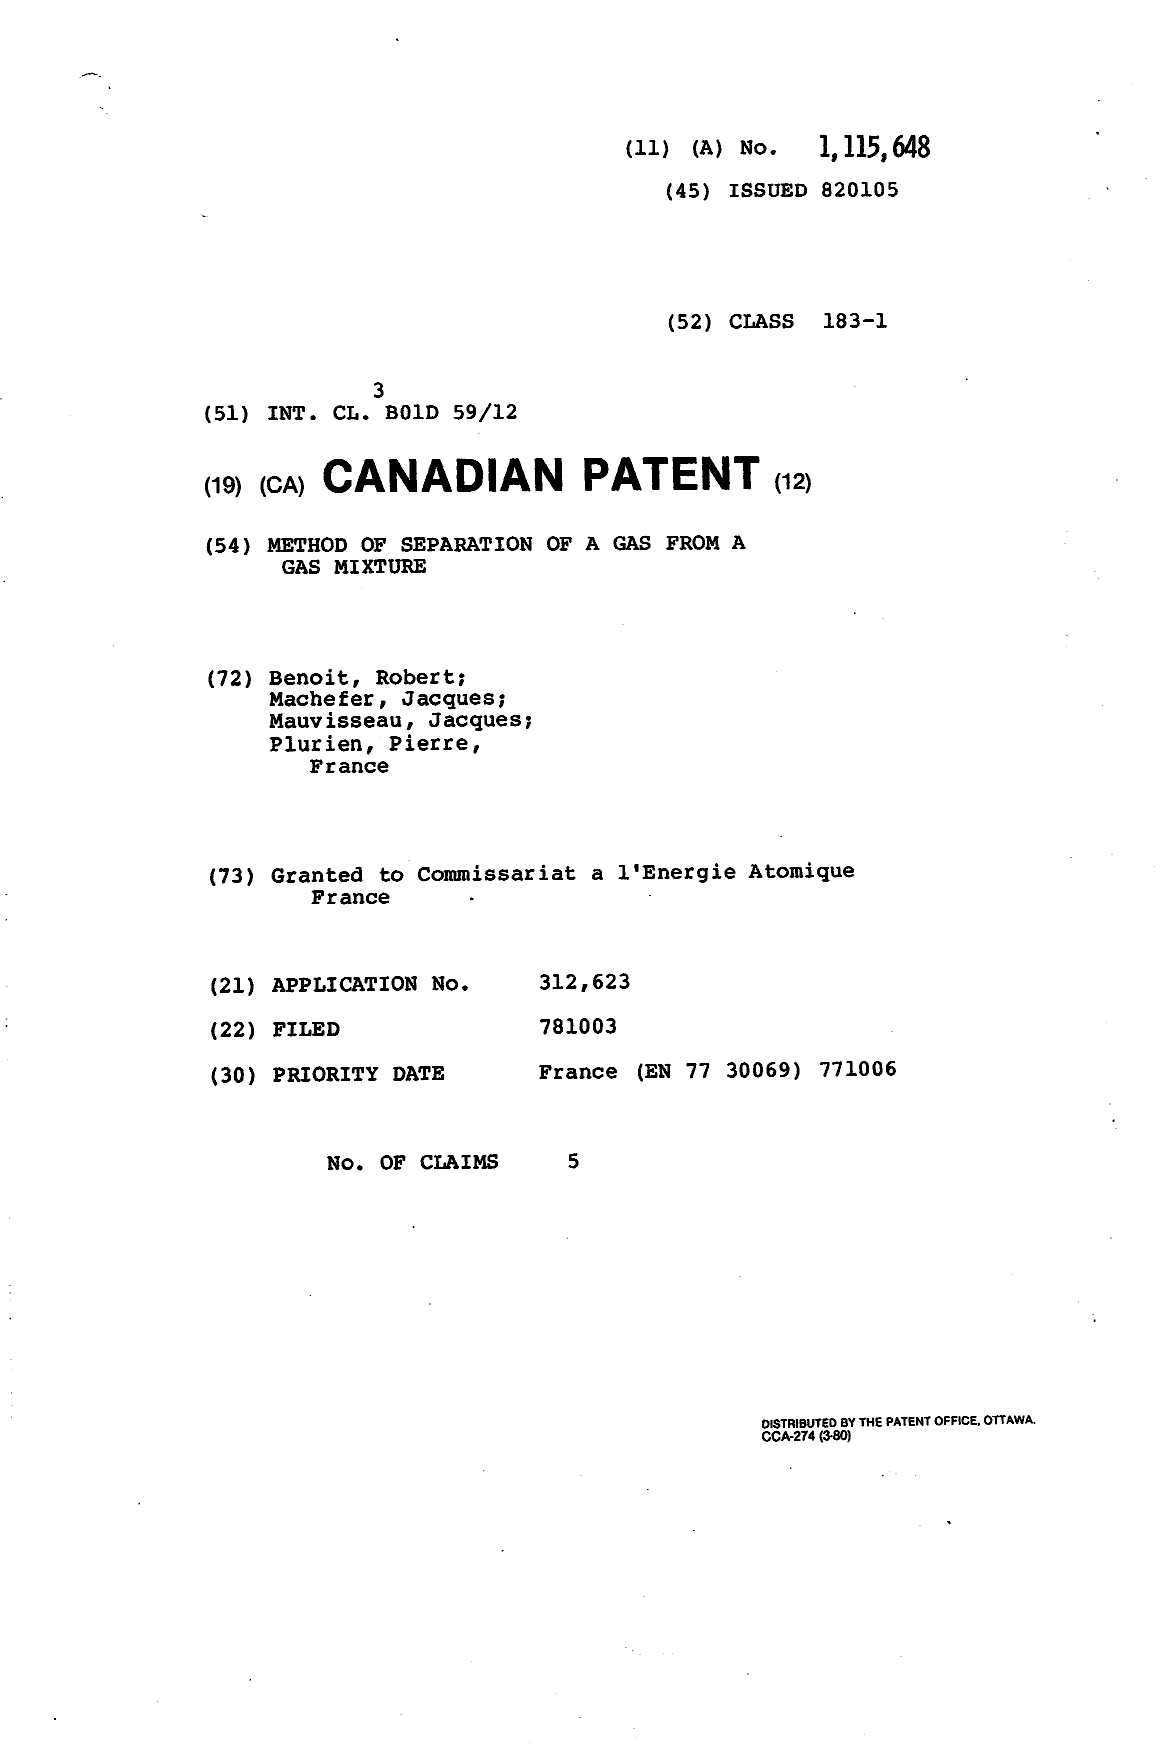 Document de brevet canadien 1115648. Page couverture 19940127. Image 1 de 1